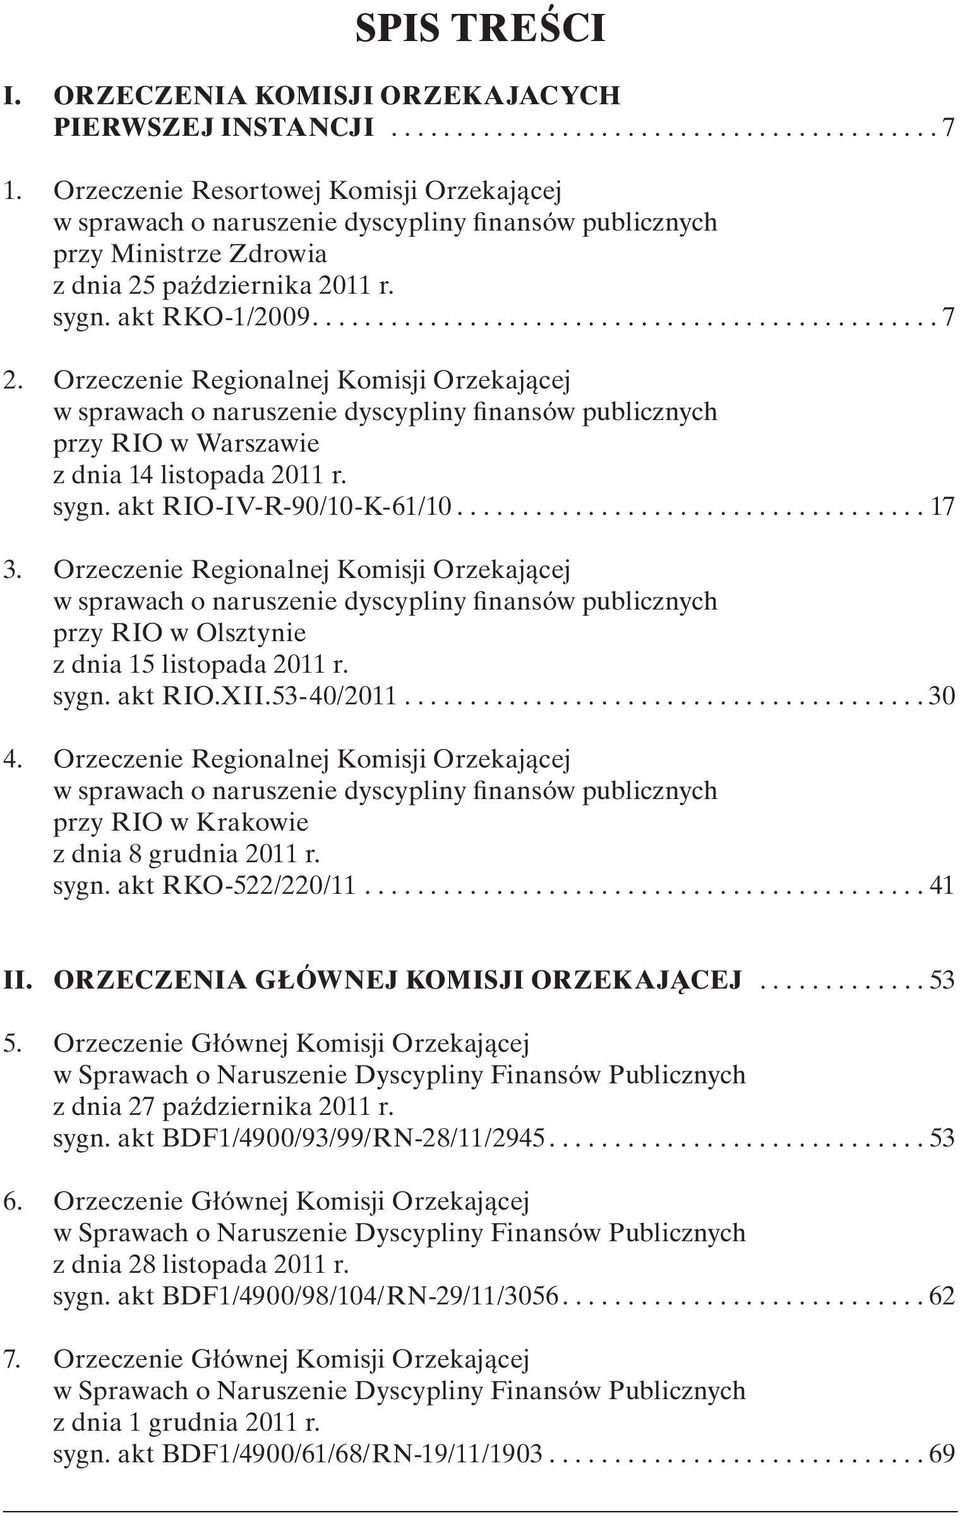 Orzeczenie Regionalnej Komisji Orzekającej w sprawach o naruszenie dyscypliny finansów publicznych przy RIO w Warszawie z dnia 14 listopada 2011 r. sygn. akt RIO-IV-R-90/10-K-61/10.................................... 17 3.